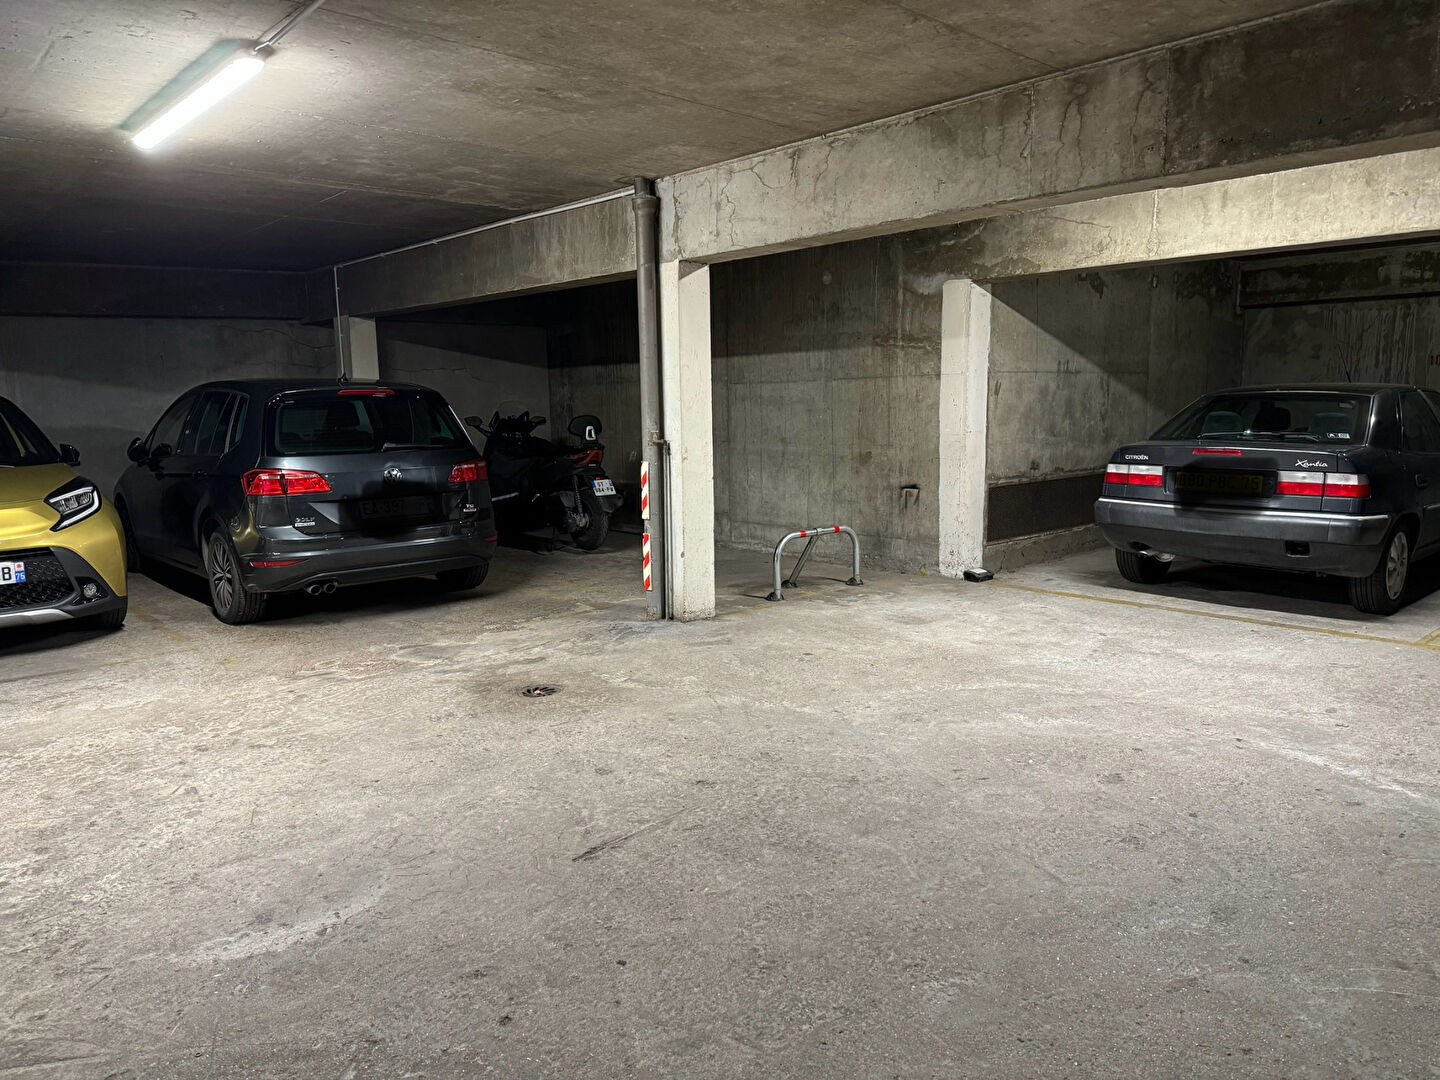 Vente Garage / Parking à Paris Gobelins 13e arrondissement 0 pièce